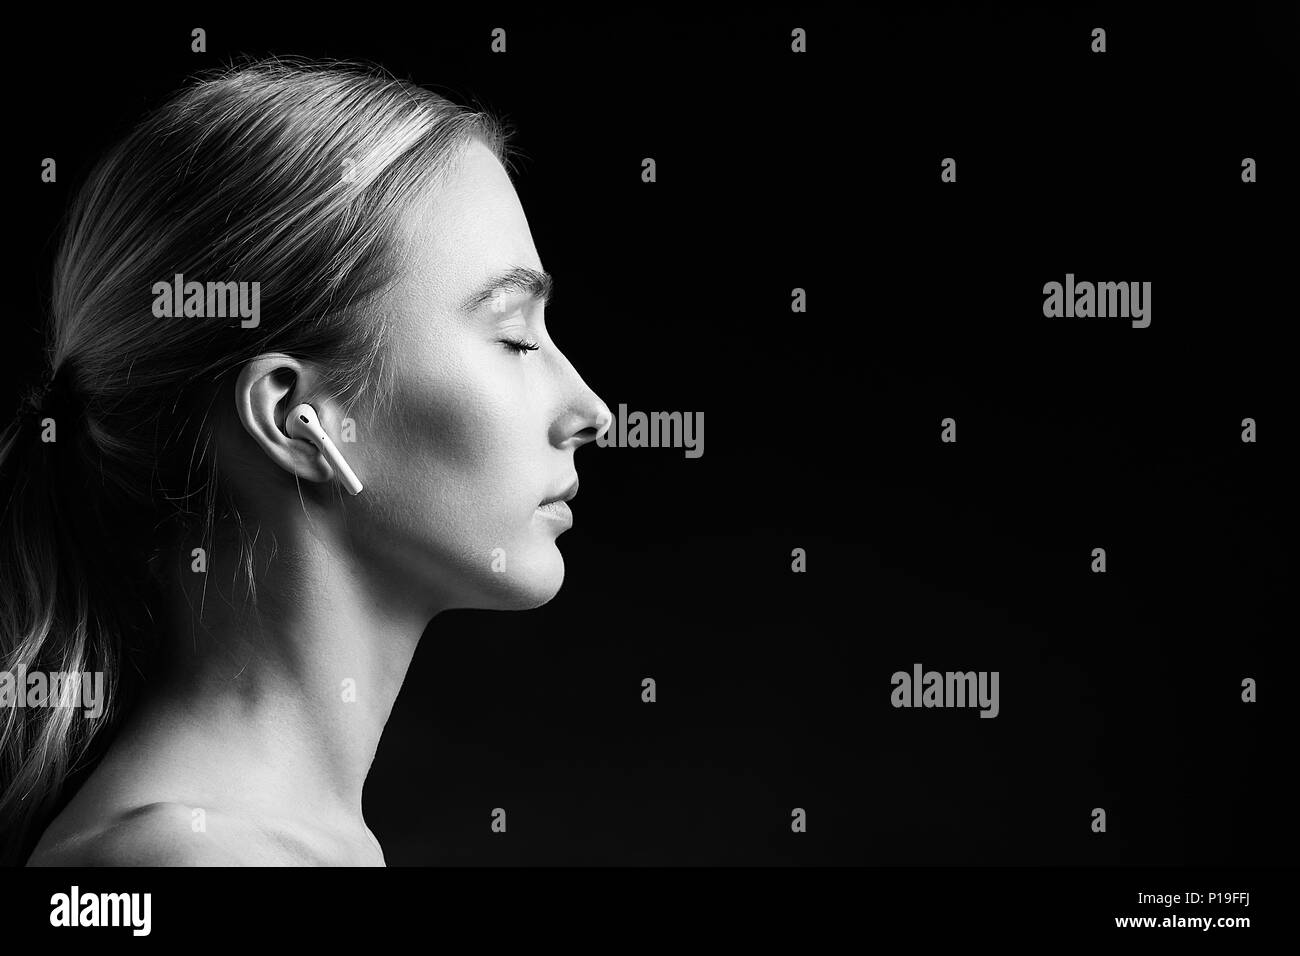 Profil von blonde junge Frau mit Bluetooth Kopfhörer und geschlossenen Augen auf schwarzem Hintergrund, Monochrom Stockfoto